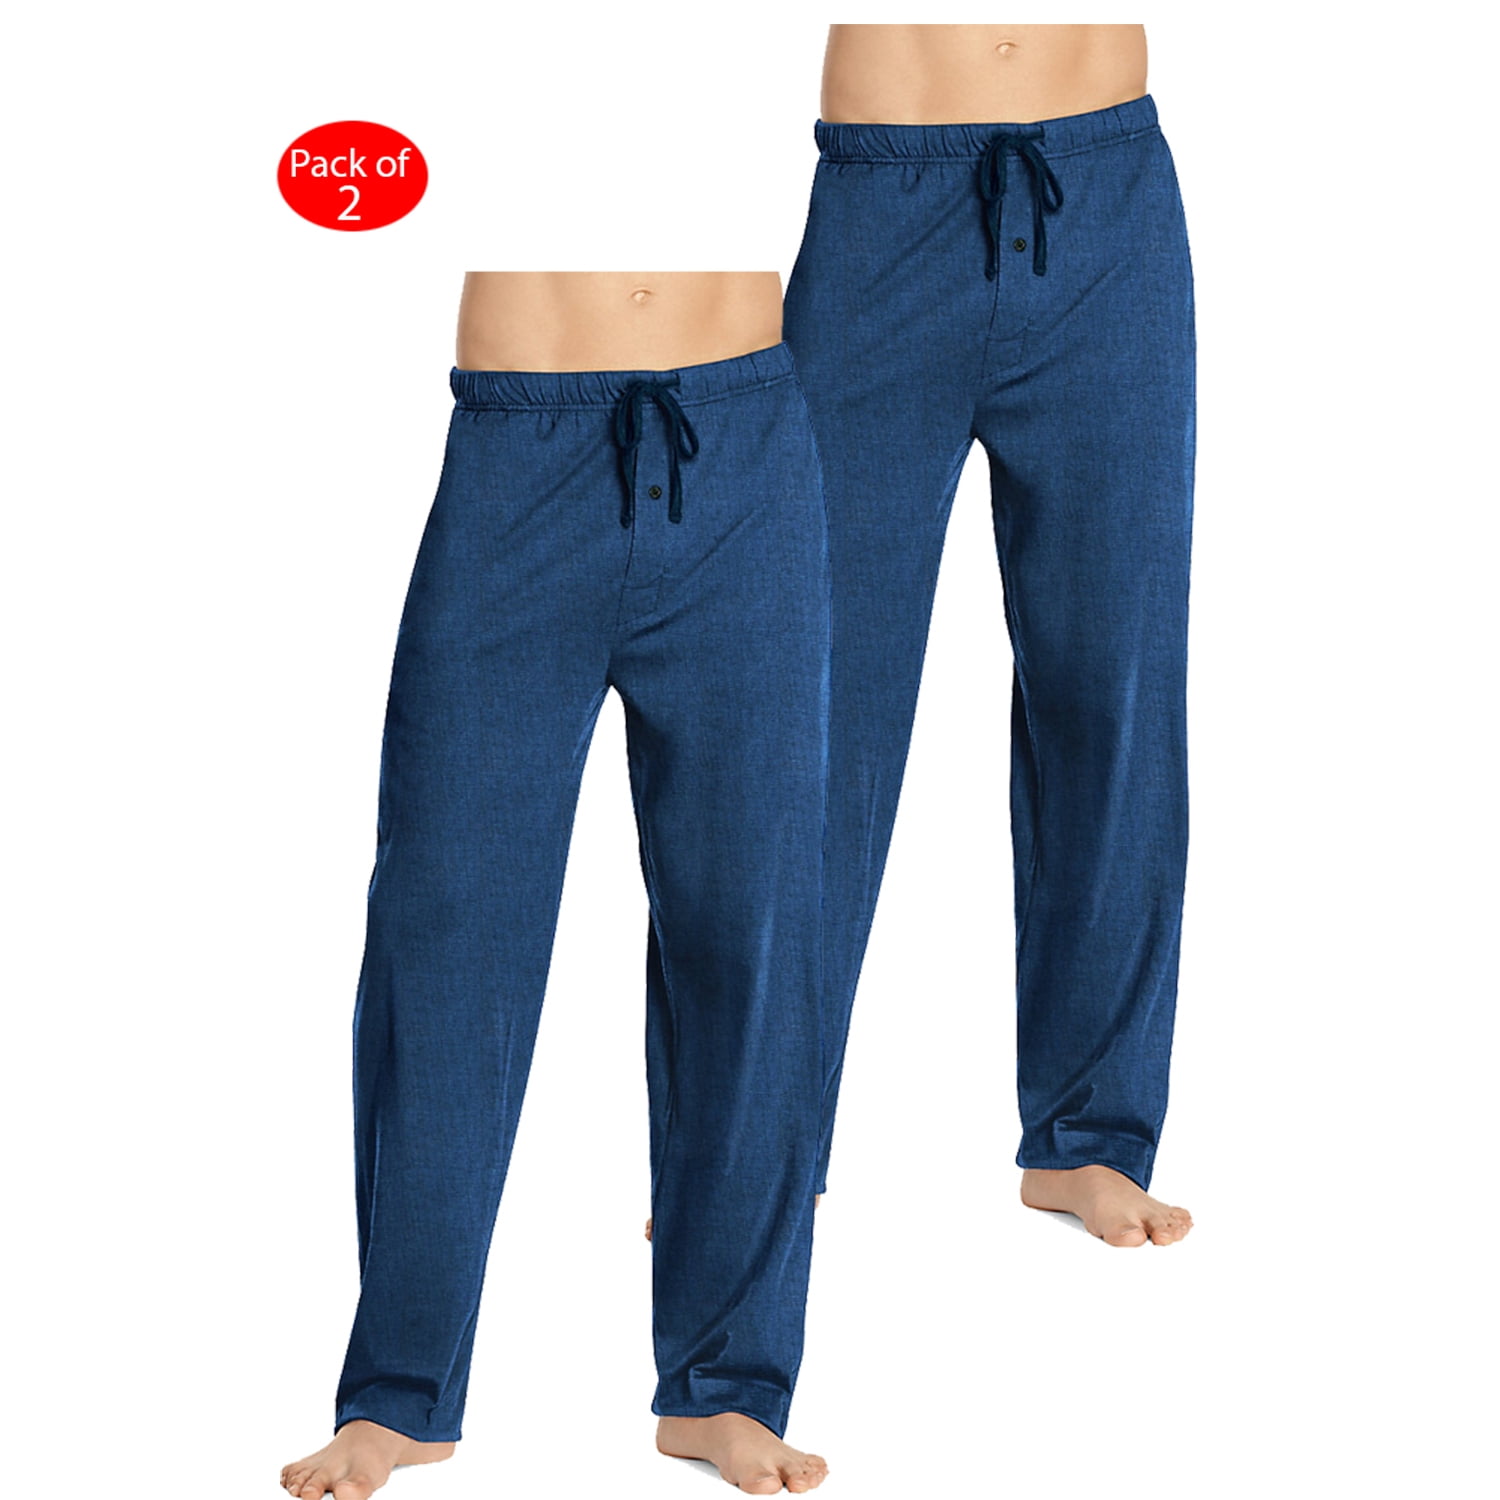 Hanes - Hanes Men's Woven Pants, Color: Denim, Size: L --- PACK OF 2 ...